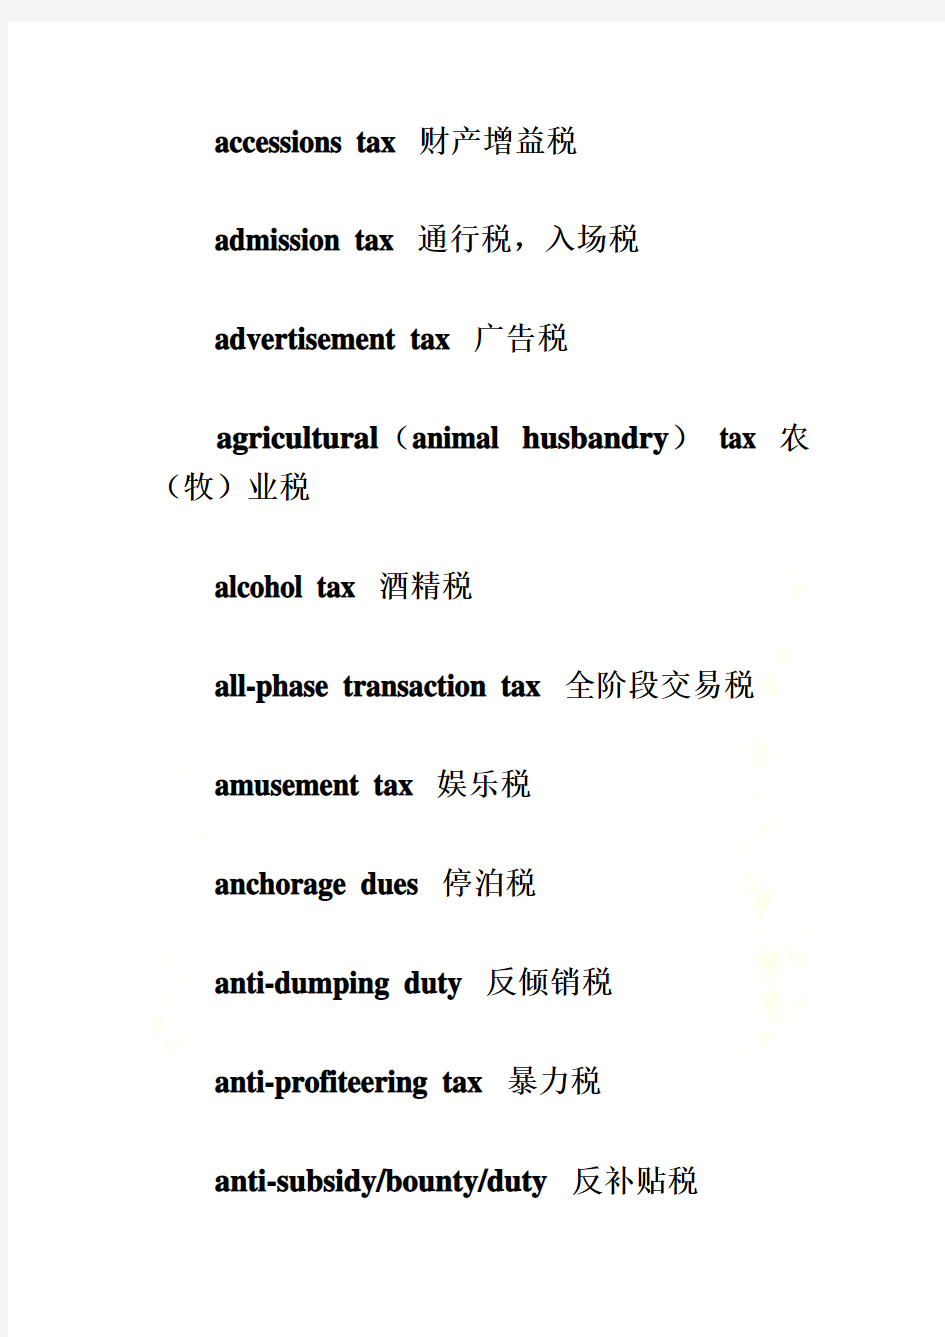 各种税收名称英文翻译